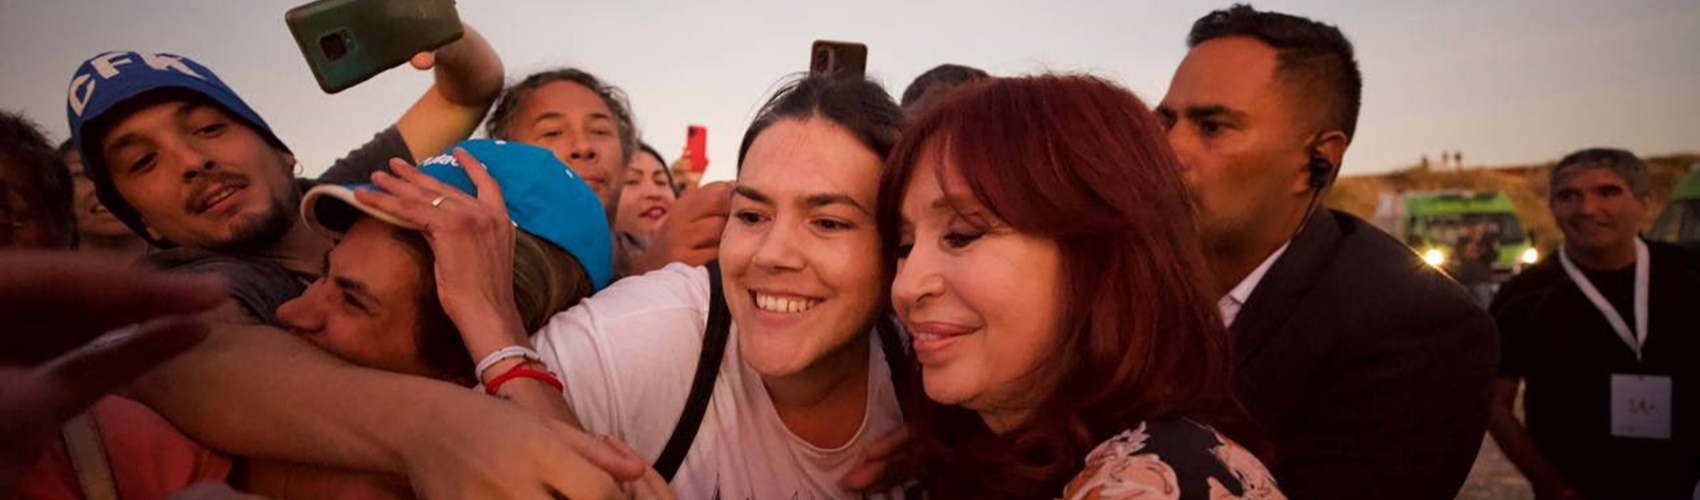 Manifestações vão dominar Argentina para impedir "Brasil-2018" contra Cristina Kirchner